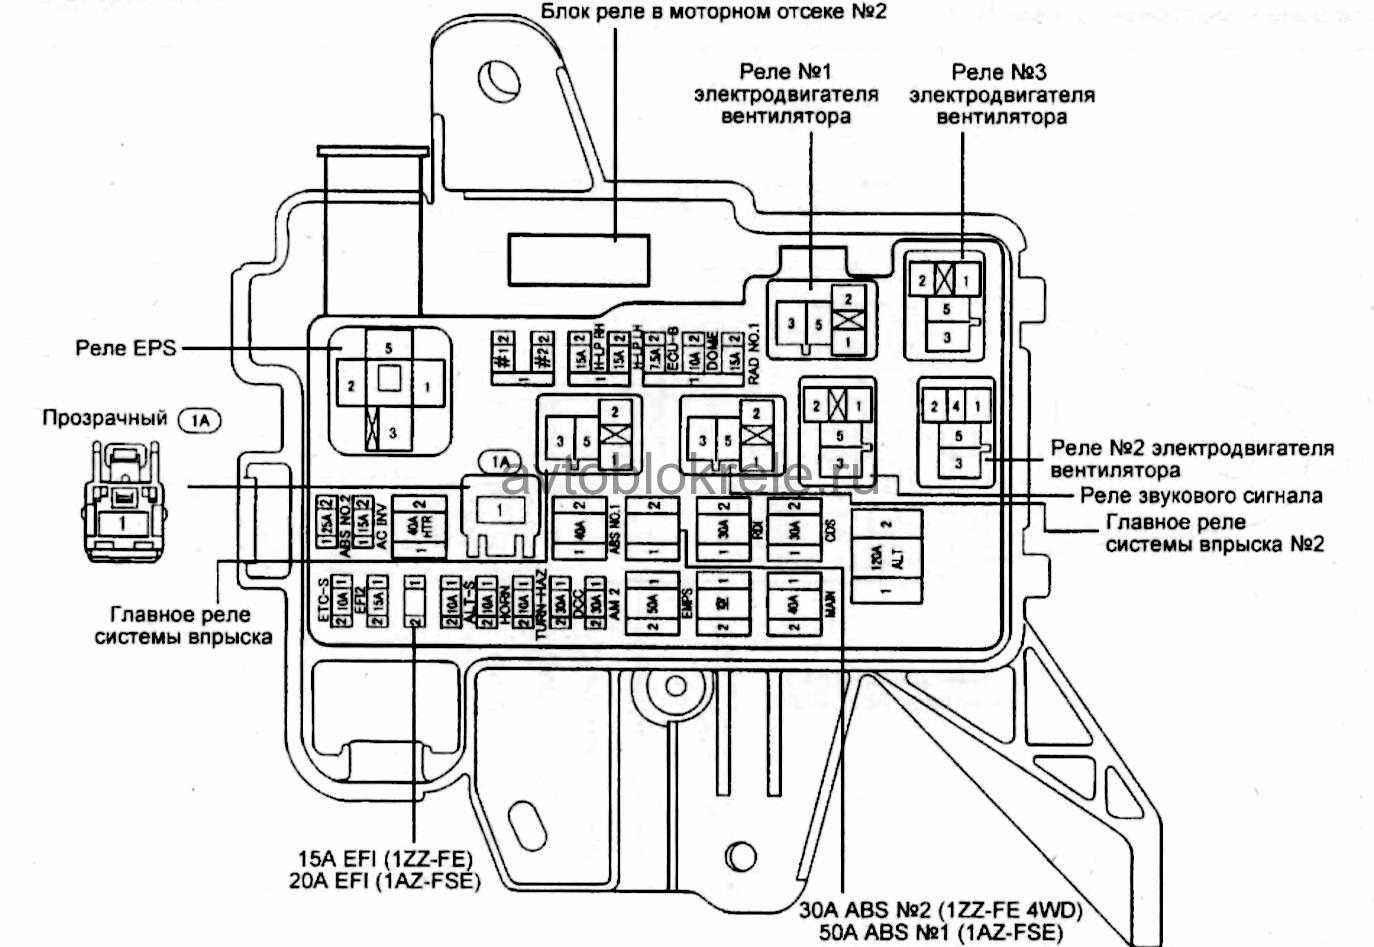 Обозначение предохранителей и реле Тойота Виста sv40 со схемами блоков и местами их расположения Предохранитель прикуривателя